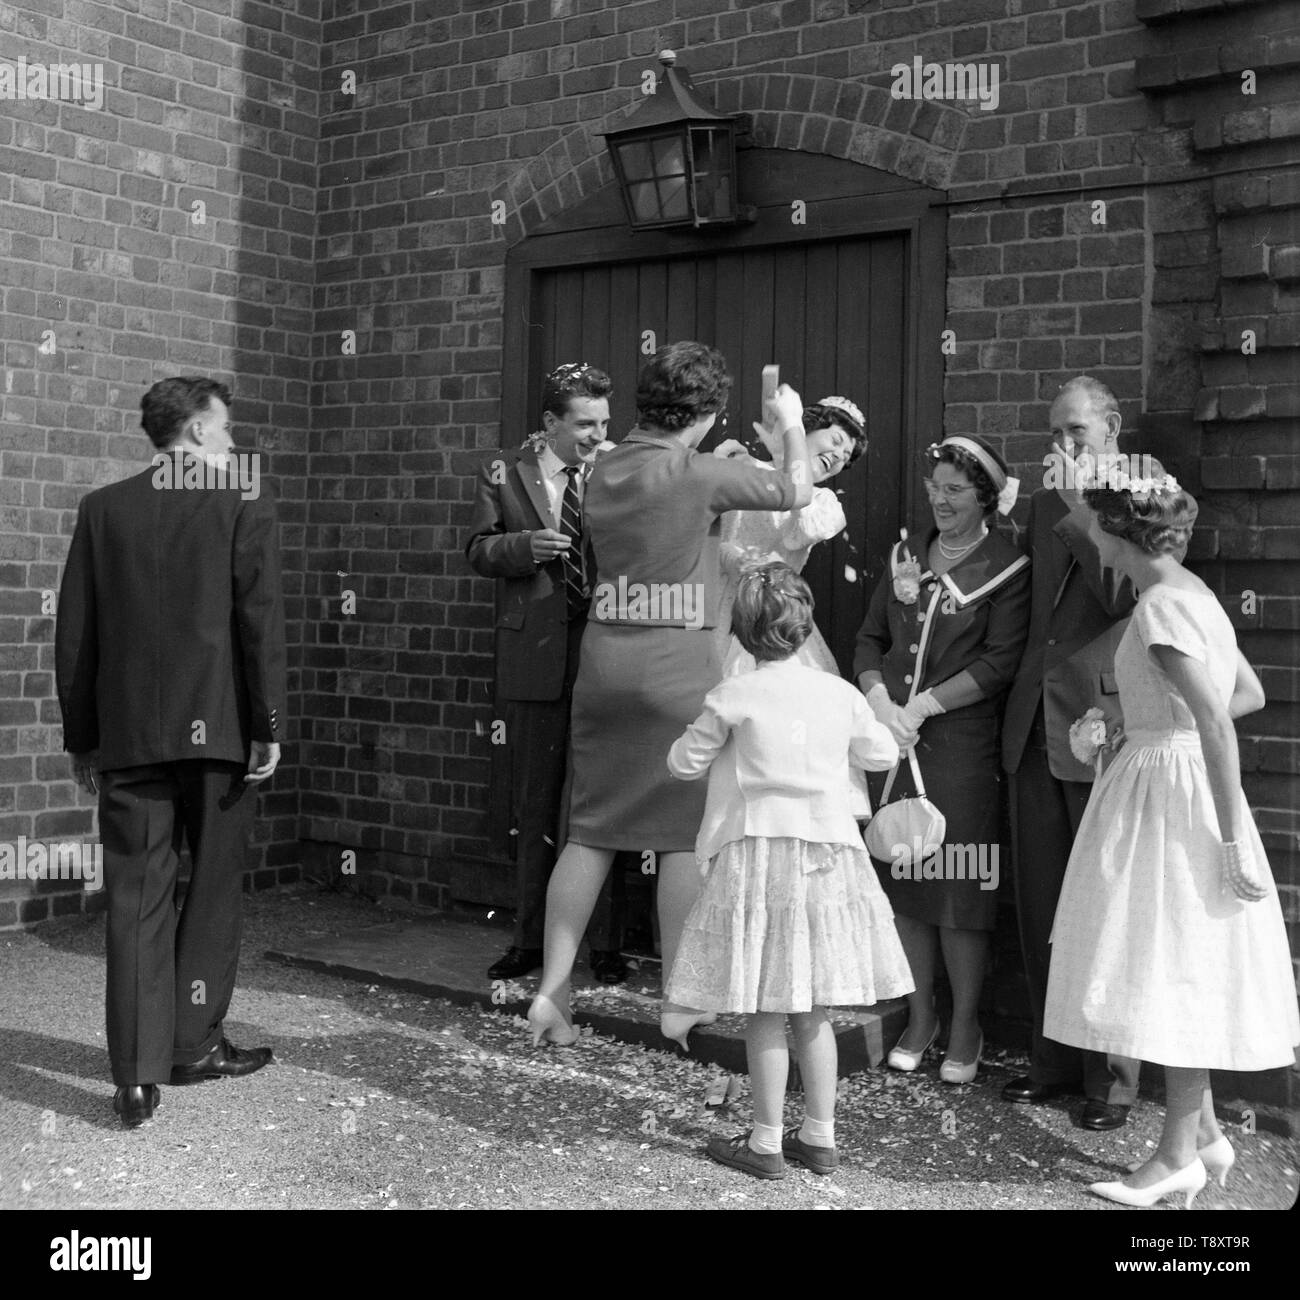 Eine Hochzeit in Großbritannien c 1960 Werfen Konfetti nur nach der Hochzeit Foto von Tony Henshaw Stockfoto